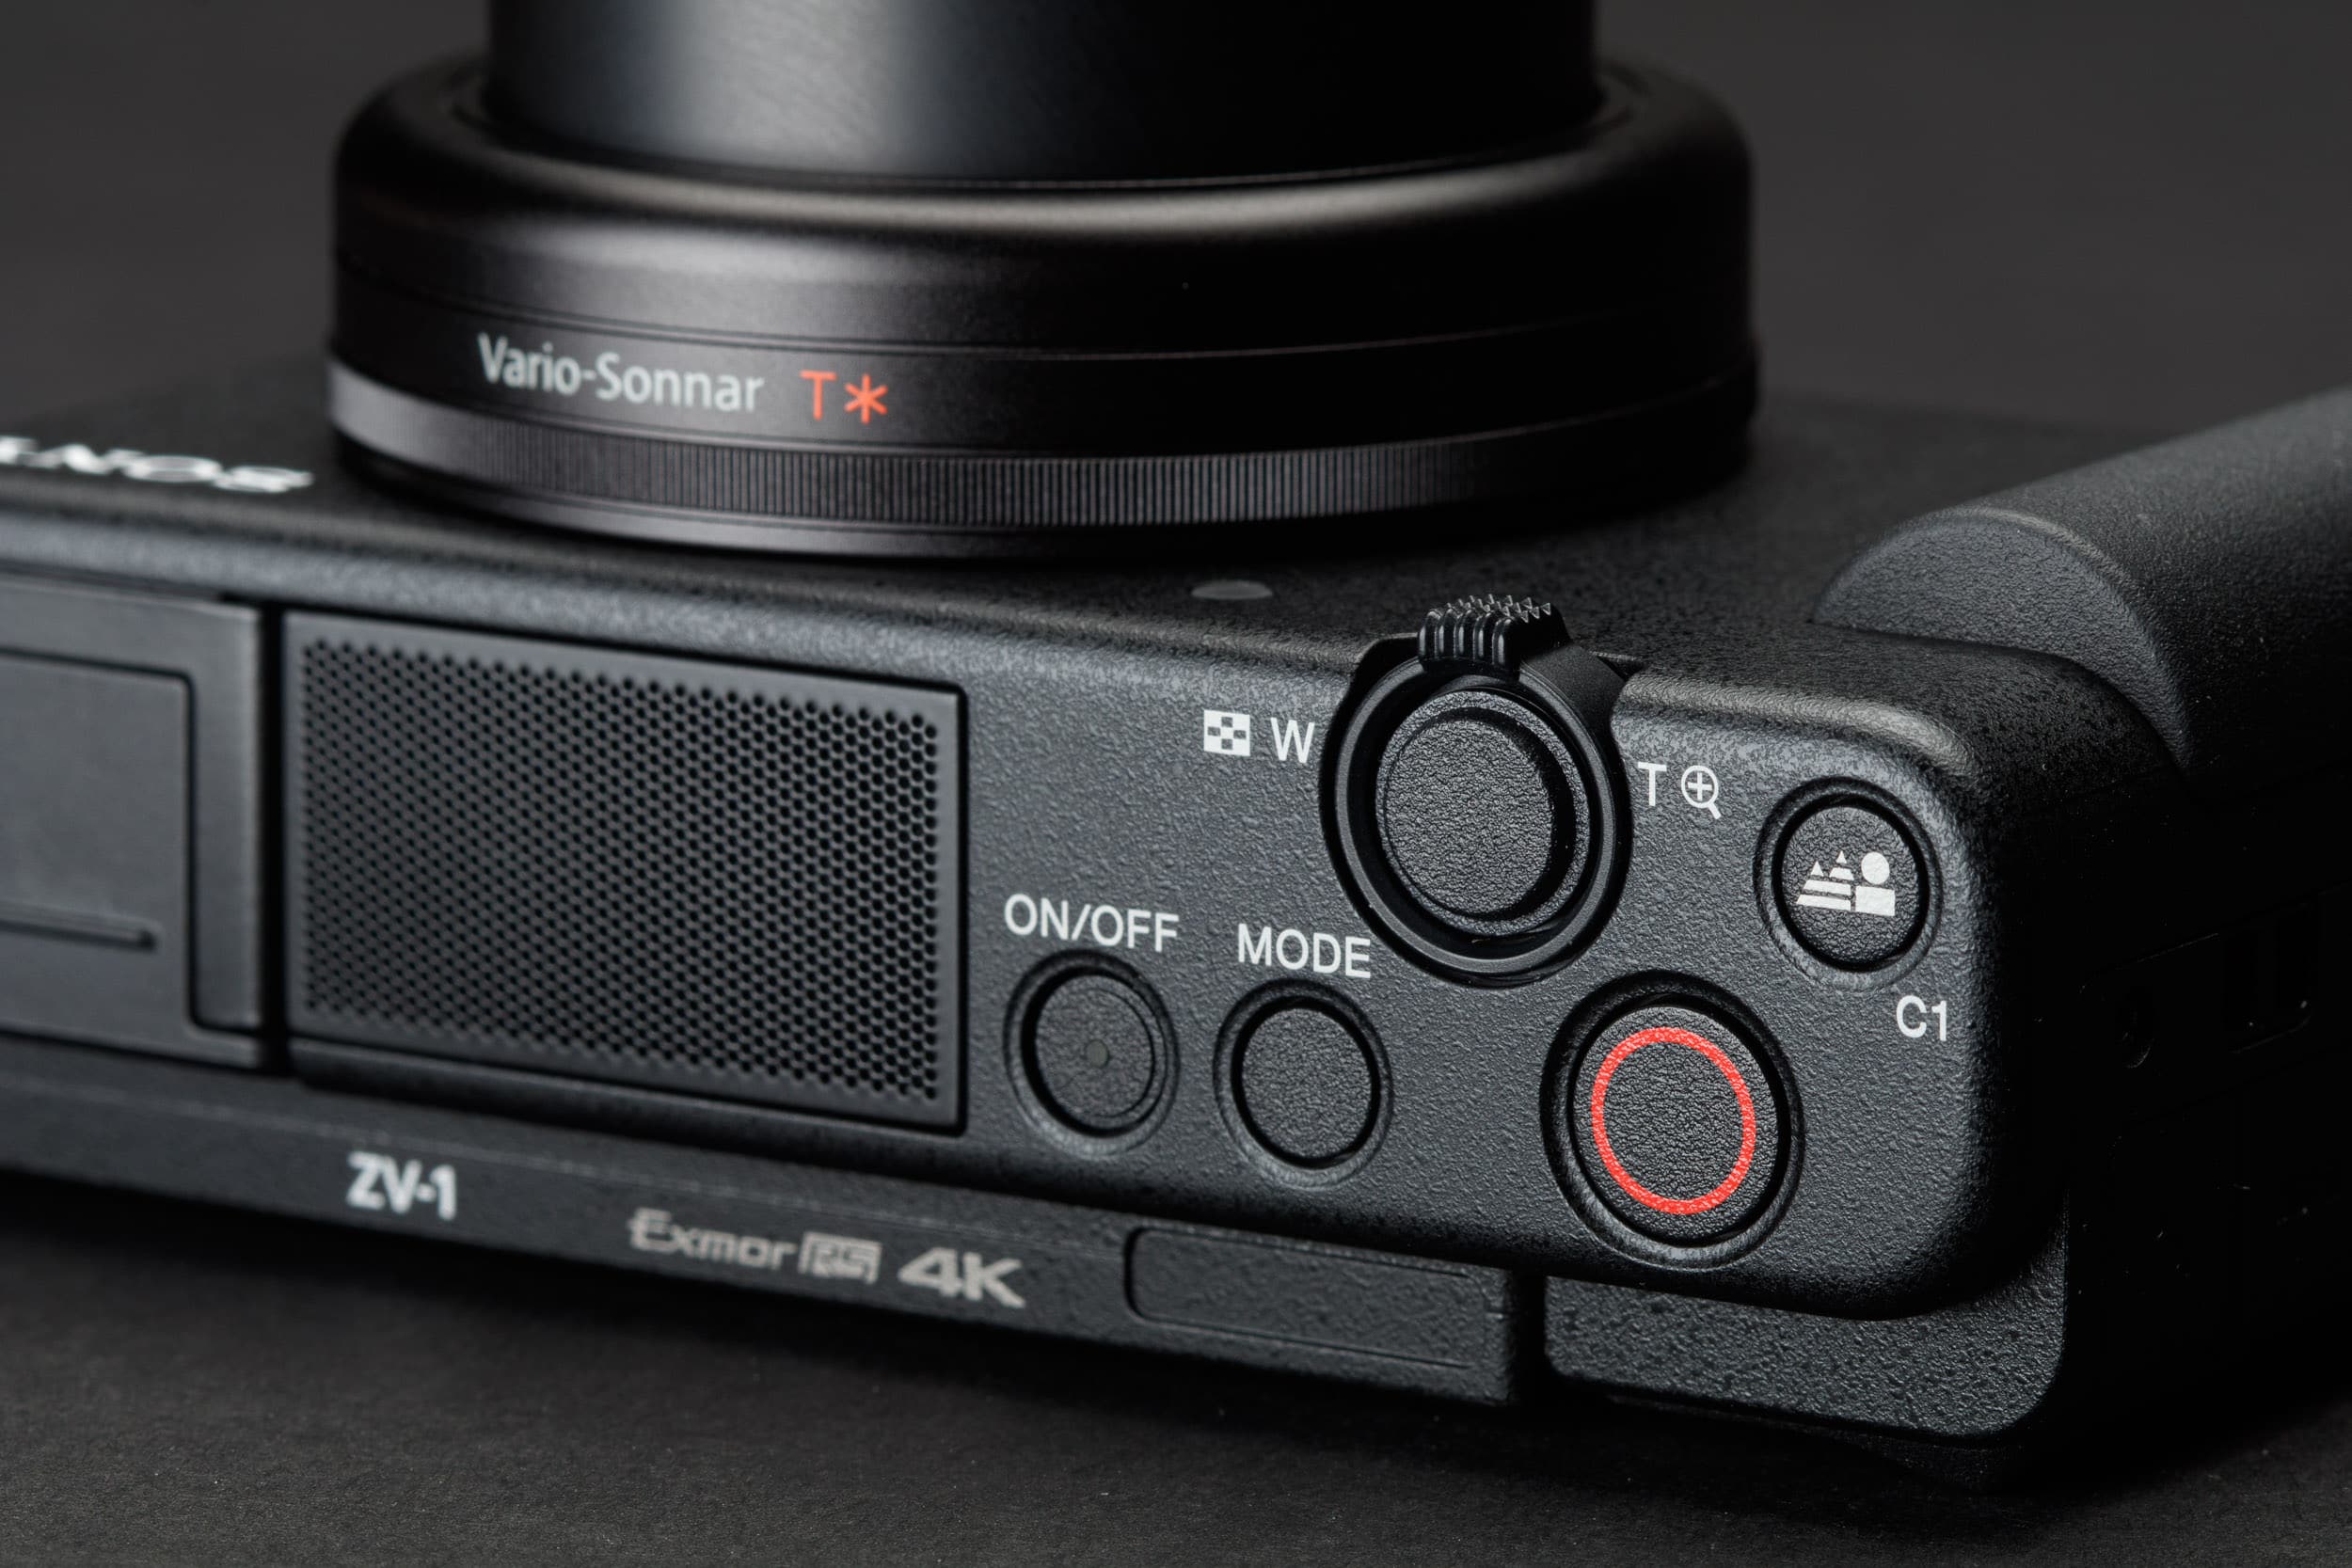 Sony ZV-1 là chiếc máy ảnh dành cho quay vlog tốt nhất hiện nay bạn nên dùng